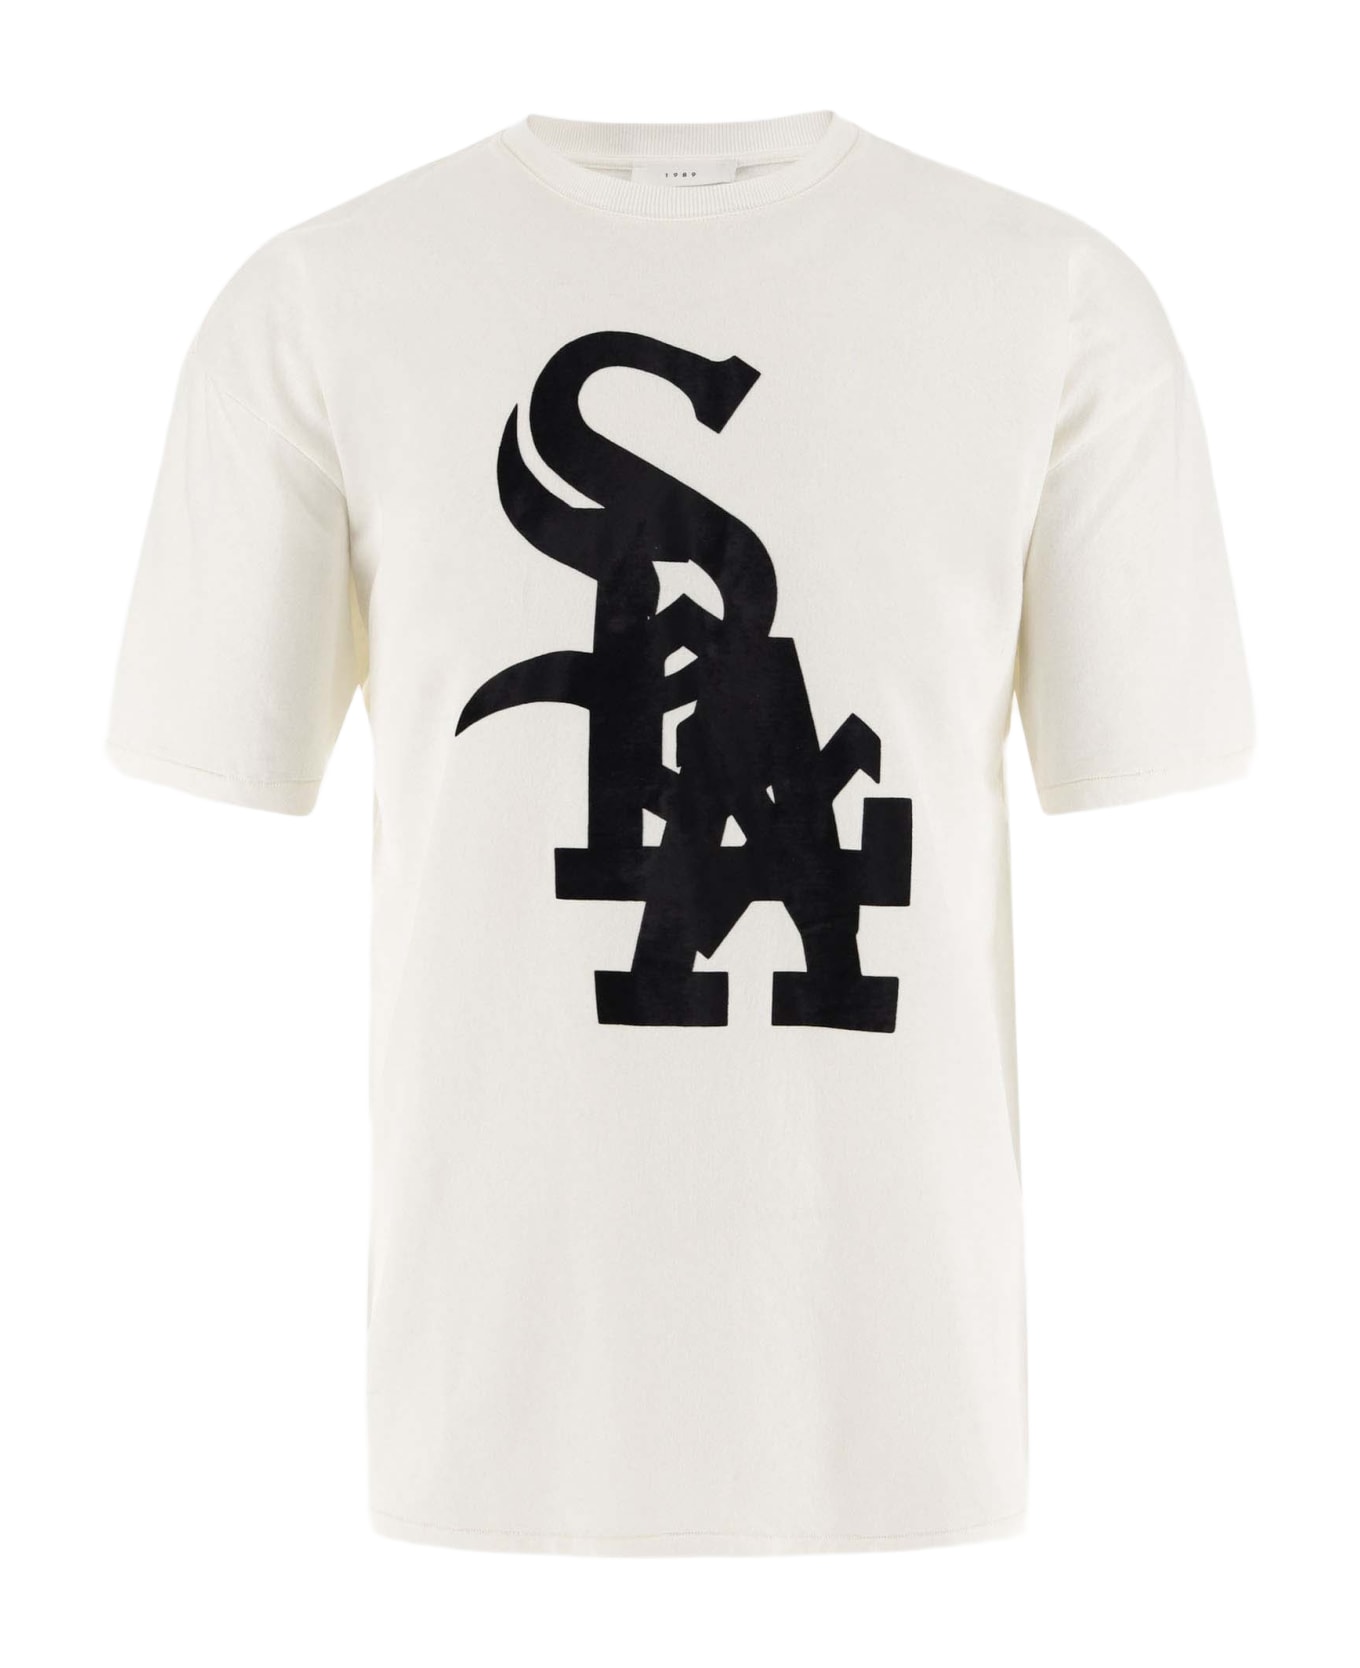 1989 Studio Cotton T-shirt With Logo - White